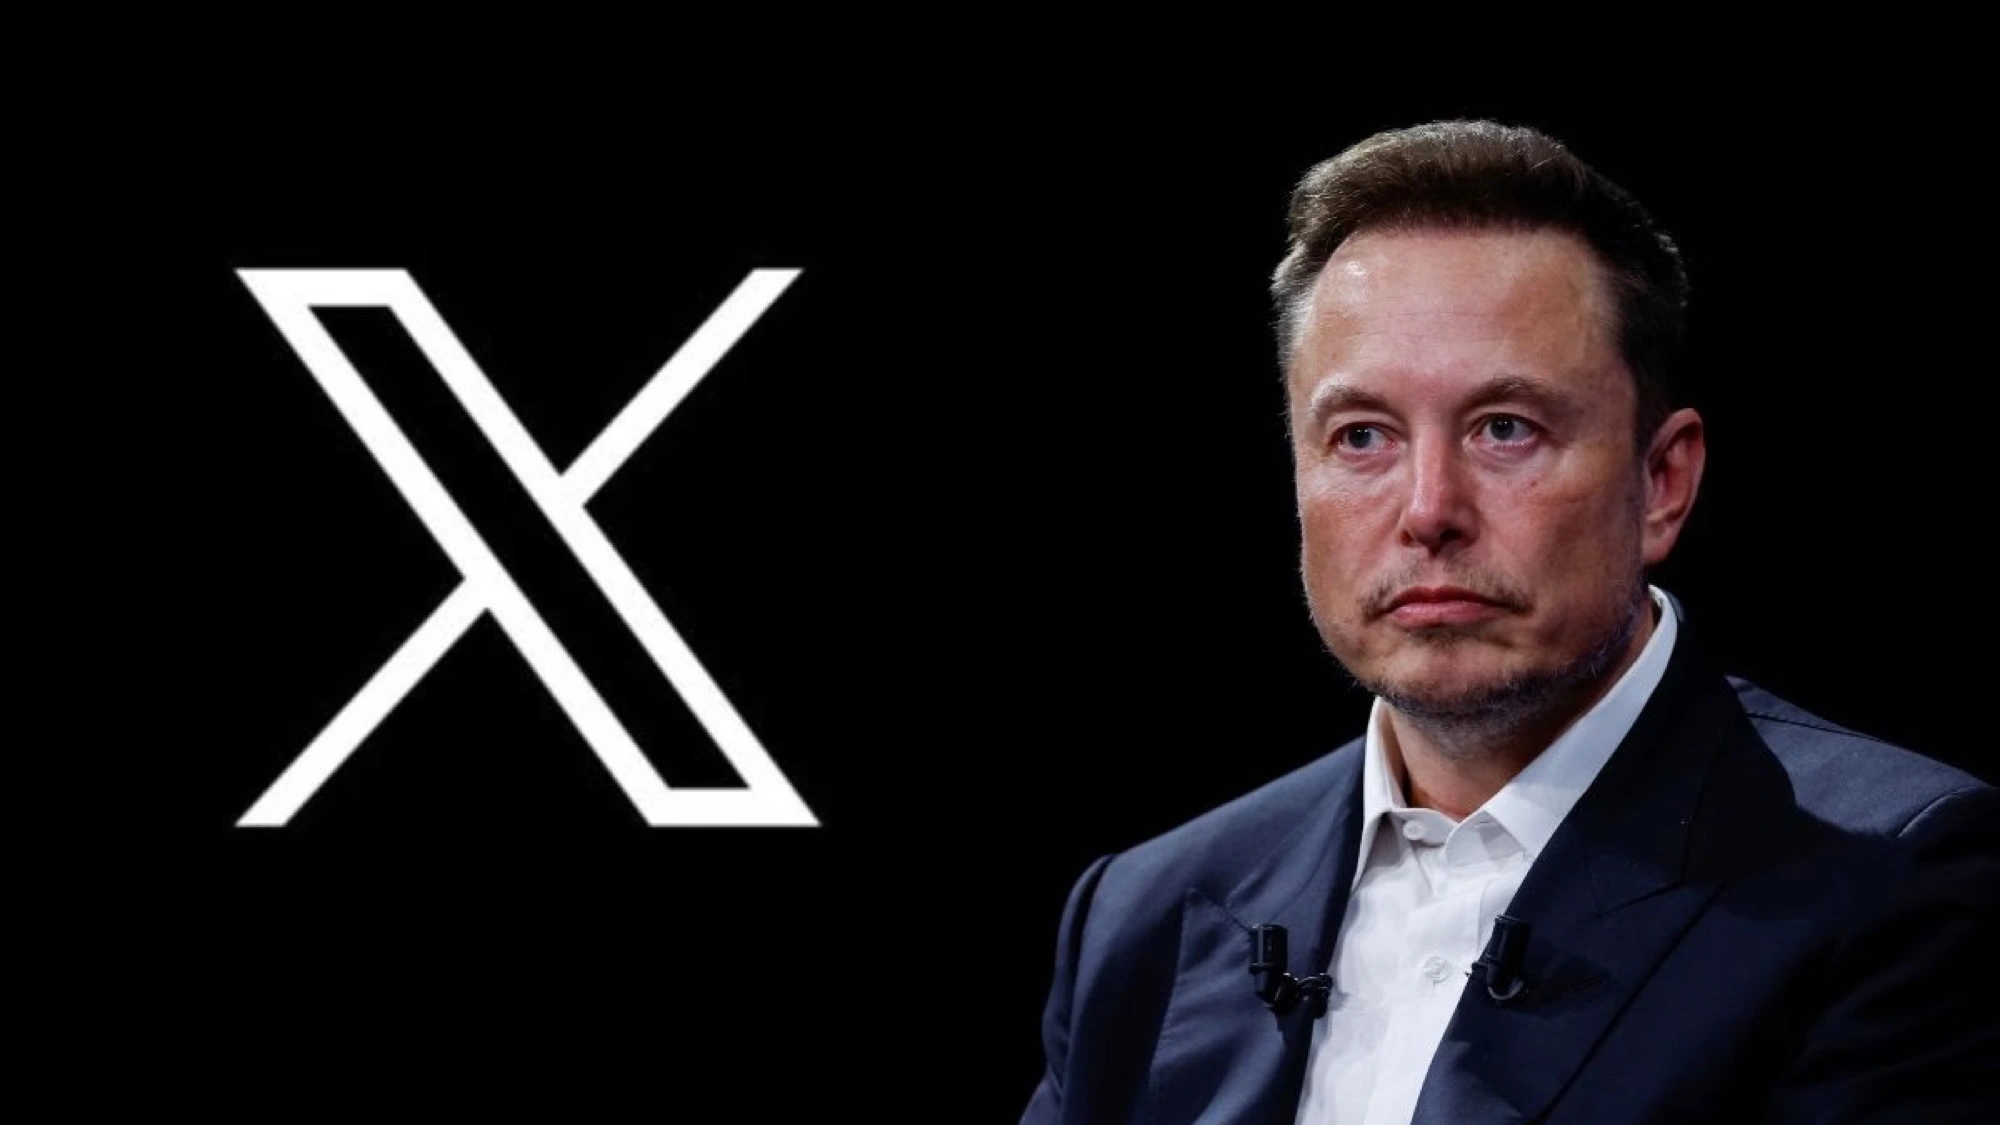 Ước tính MXH X thiệt hại 75 triệu USD vì Elon Musk ủng hộ nội dung phân biệt chủng tộc